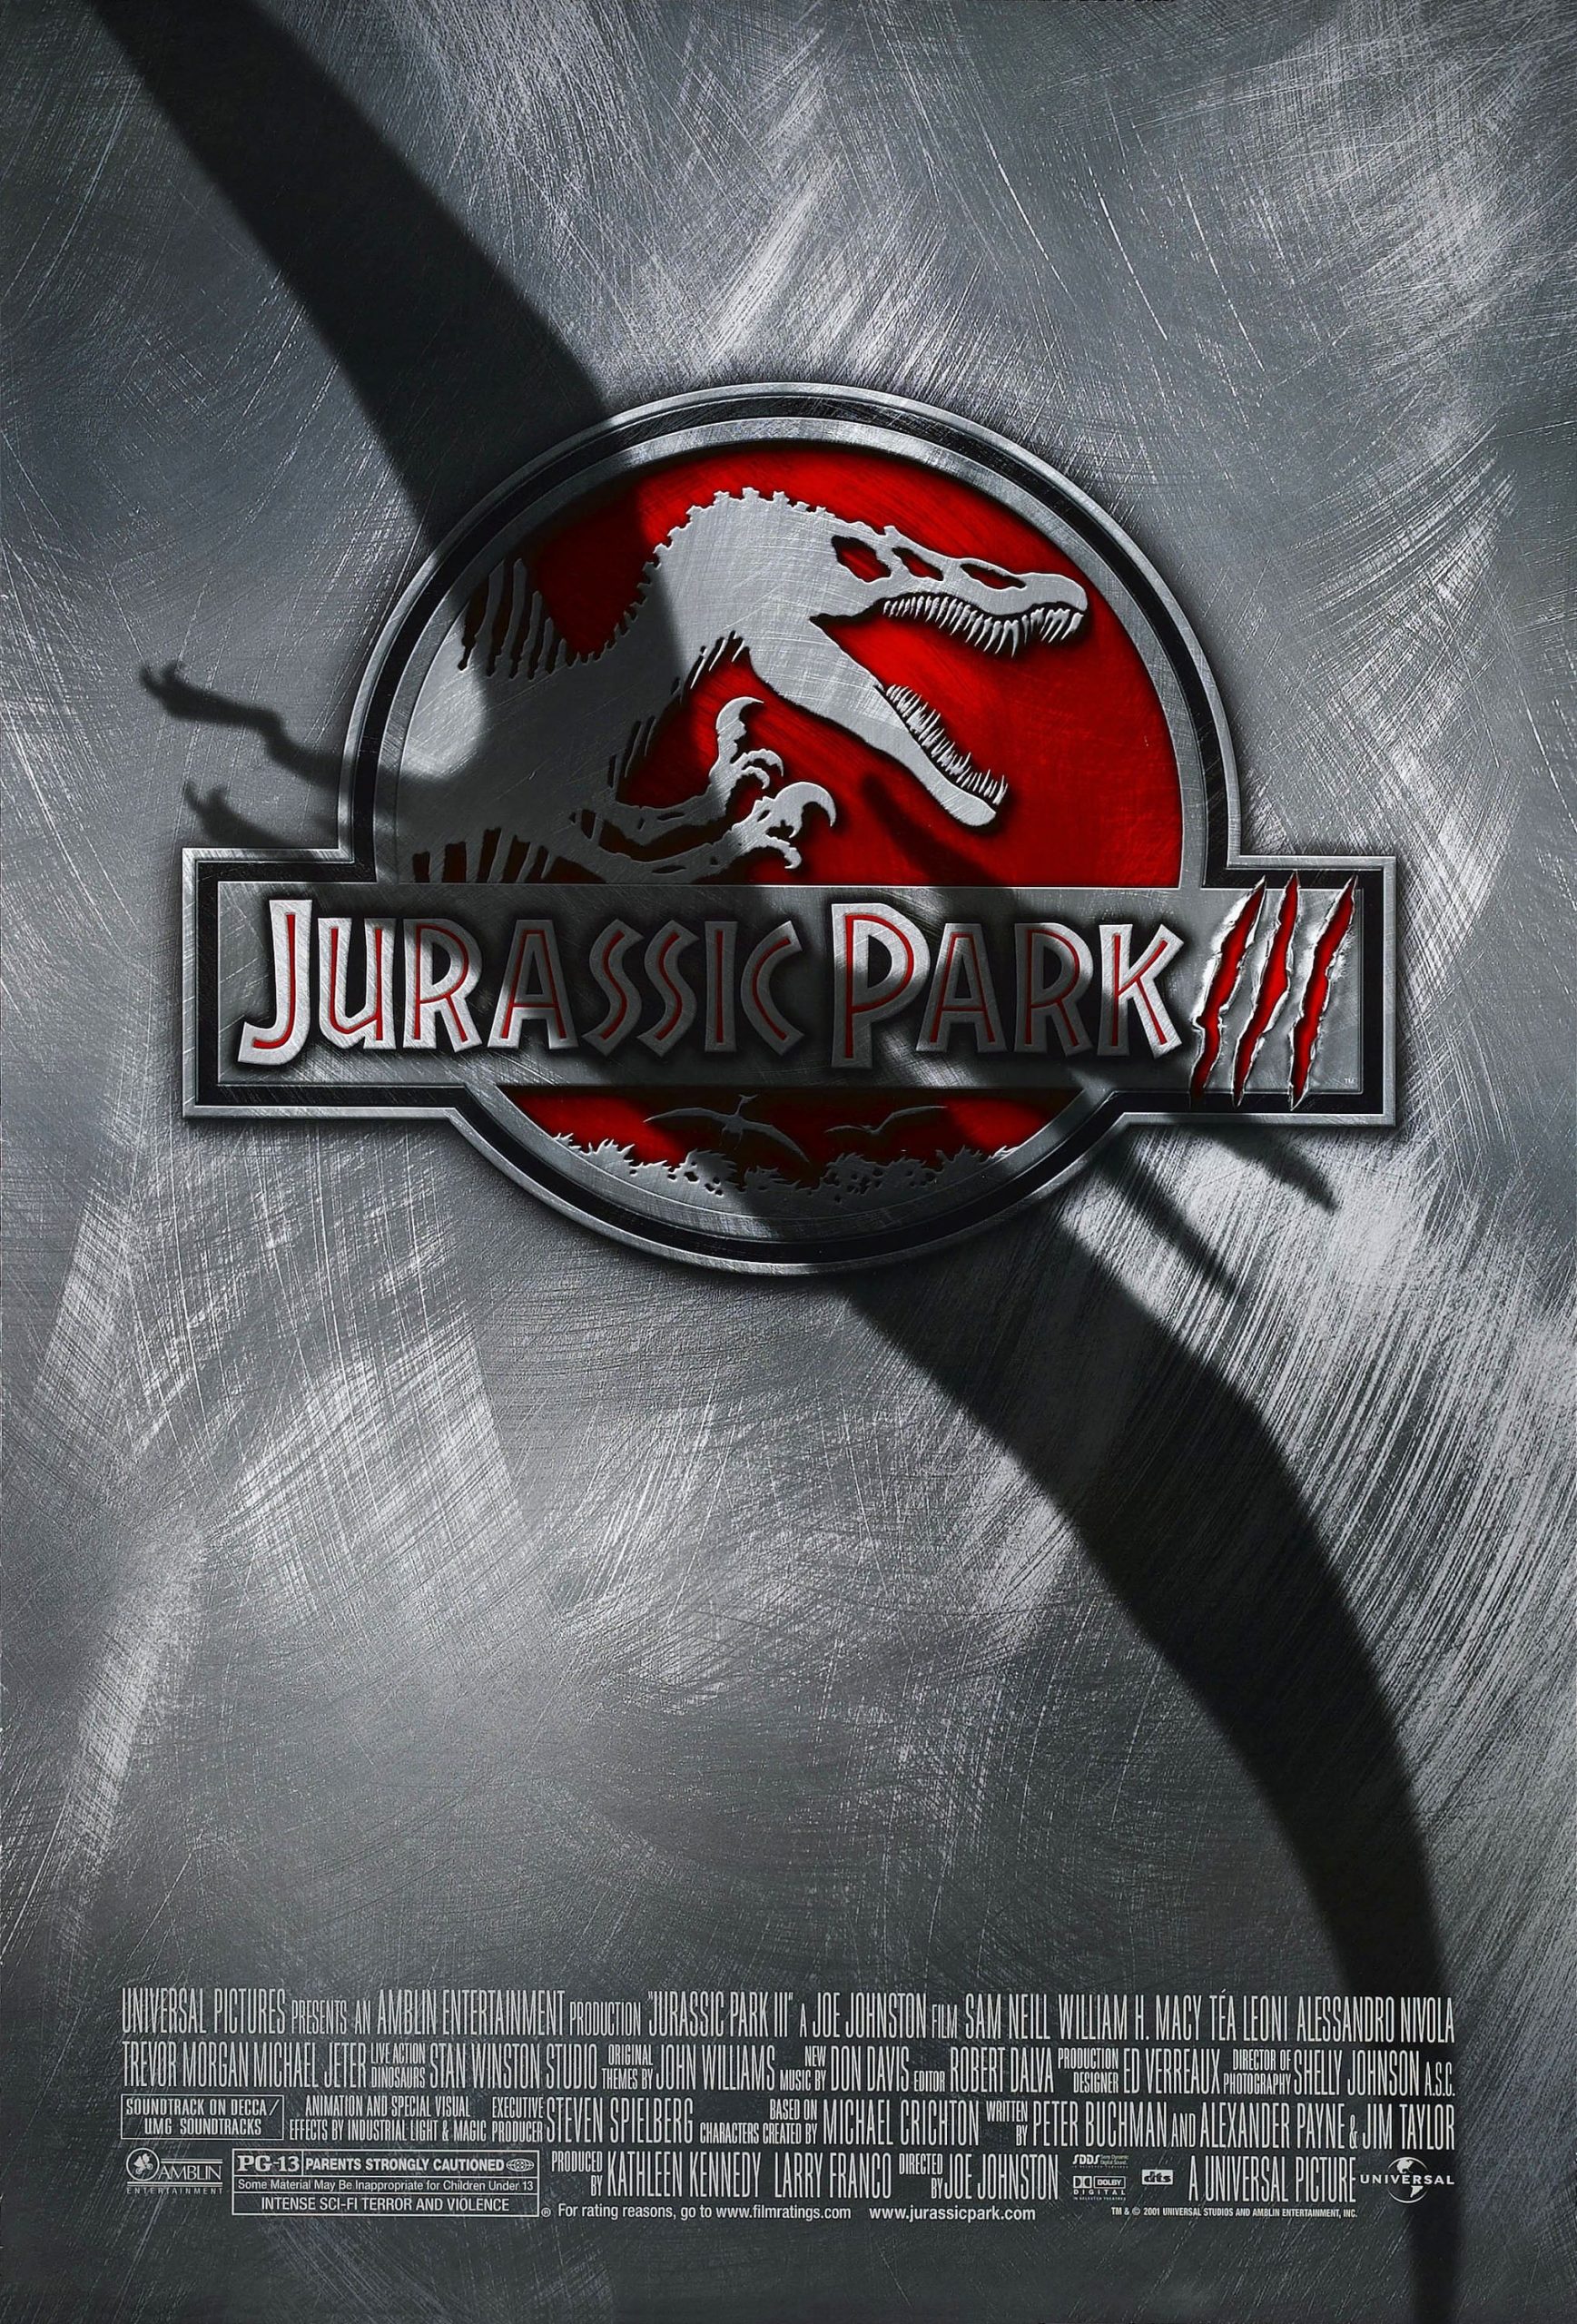 Affiches, Posters Et Images De Jurassic Park Iii (2001) - Senscritique intérieur Affiche Jurassic Park